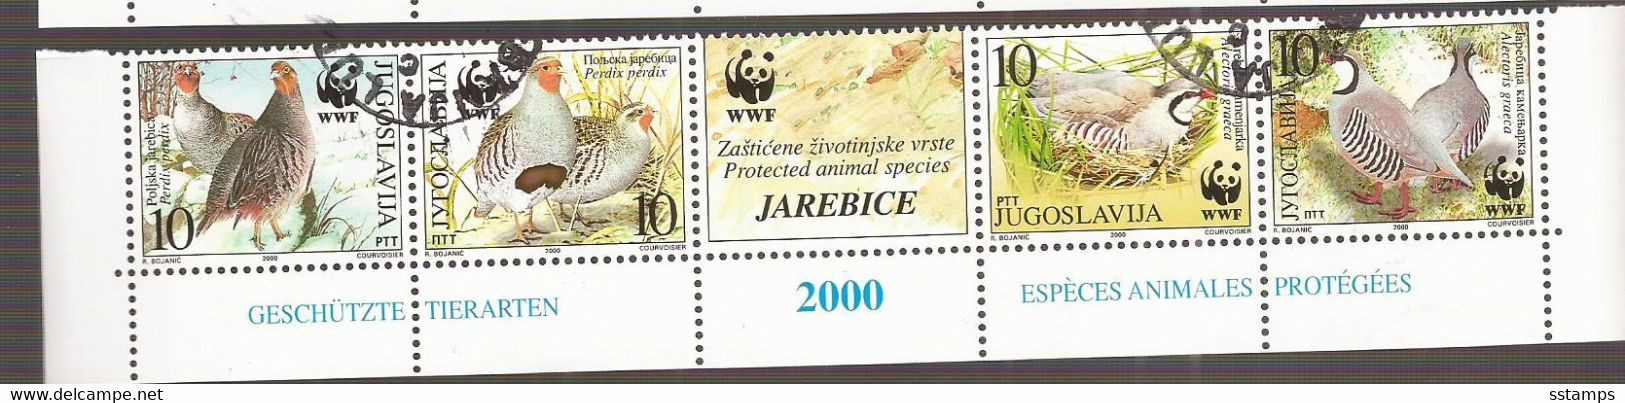 2000  2966-69  AUSVERKAUF  JUGOSLAVIJA  JUGOSLAWIEN  WWF  BIRDS REBHUHN USED - Gebraucht